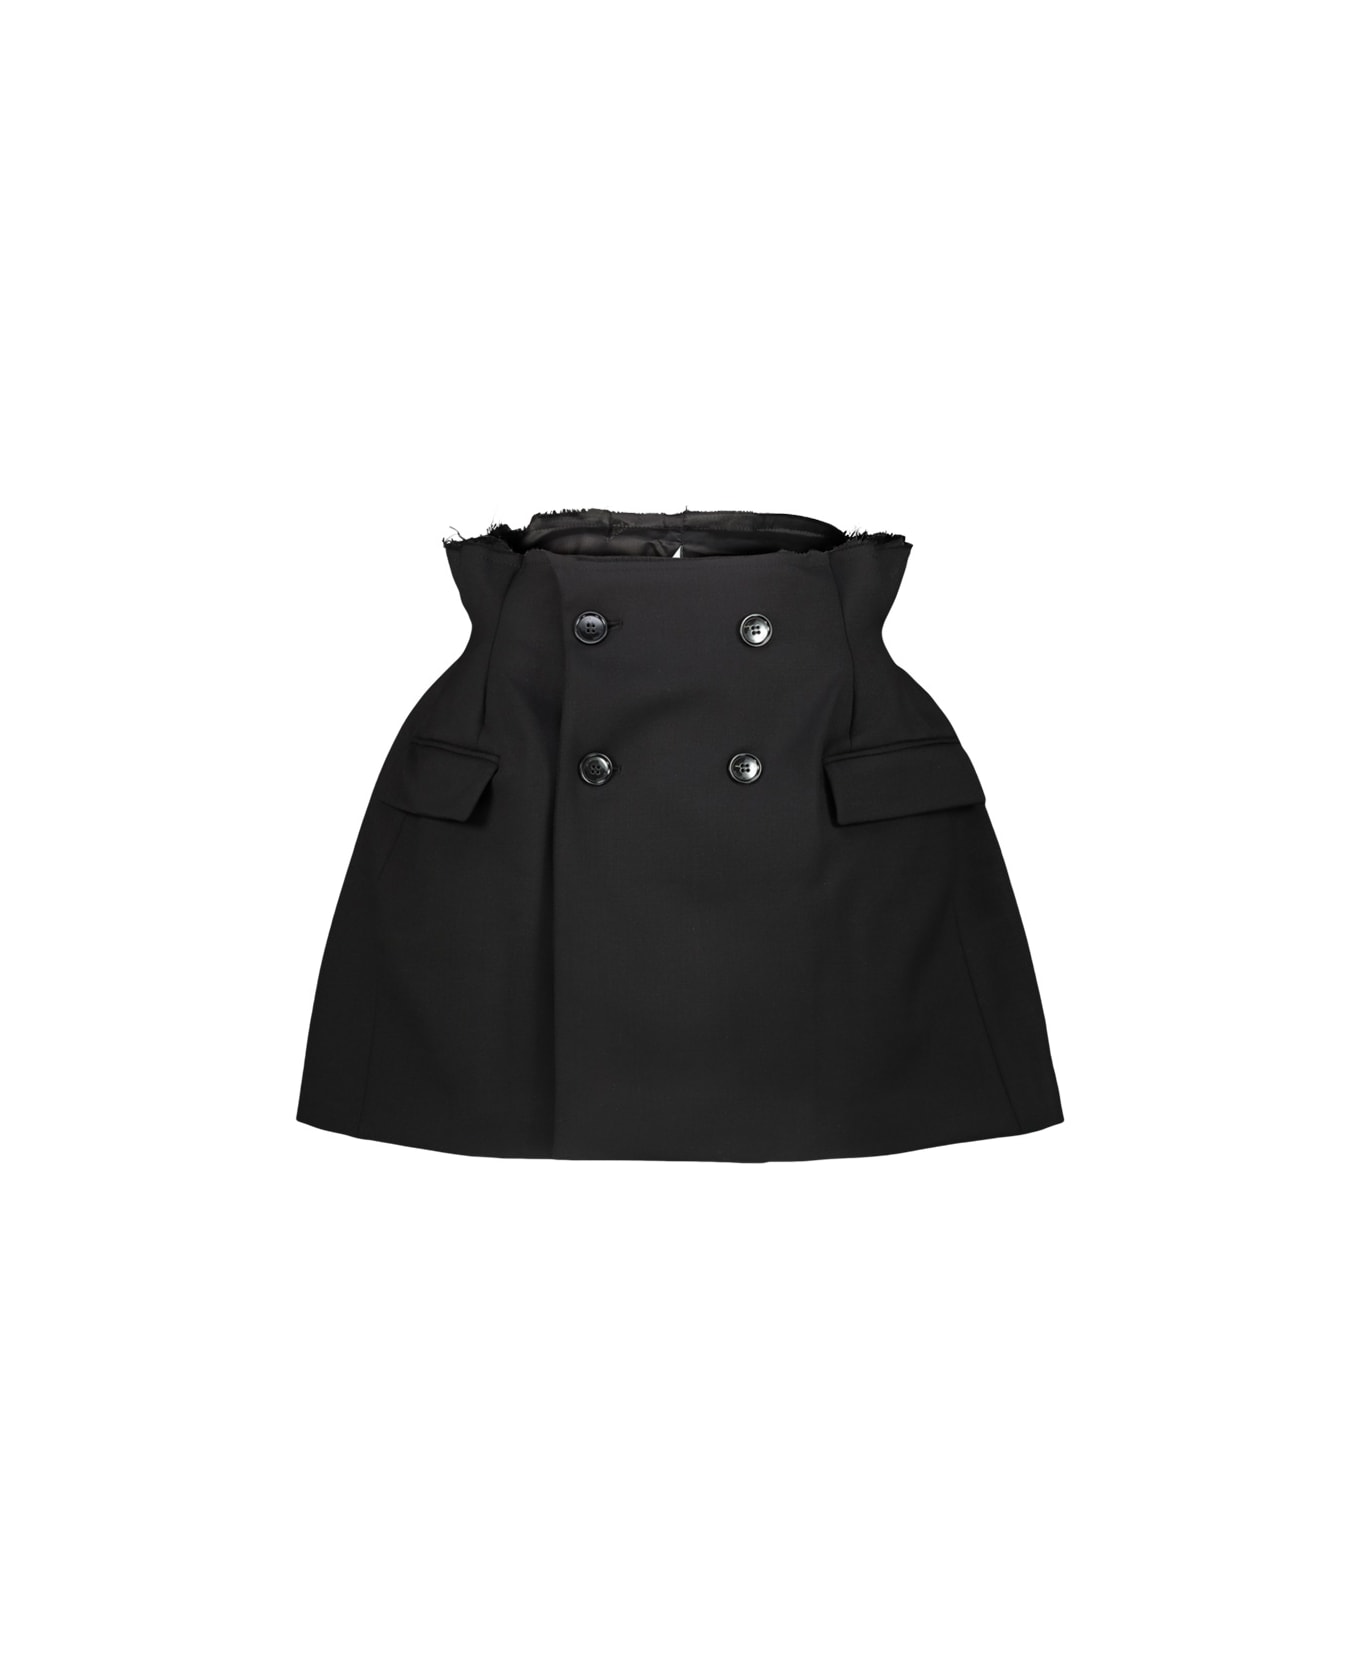 VETEMENTS Reconstructured Hourglass Skirt - Black スカート